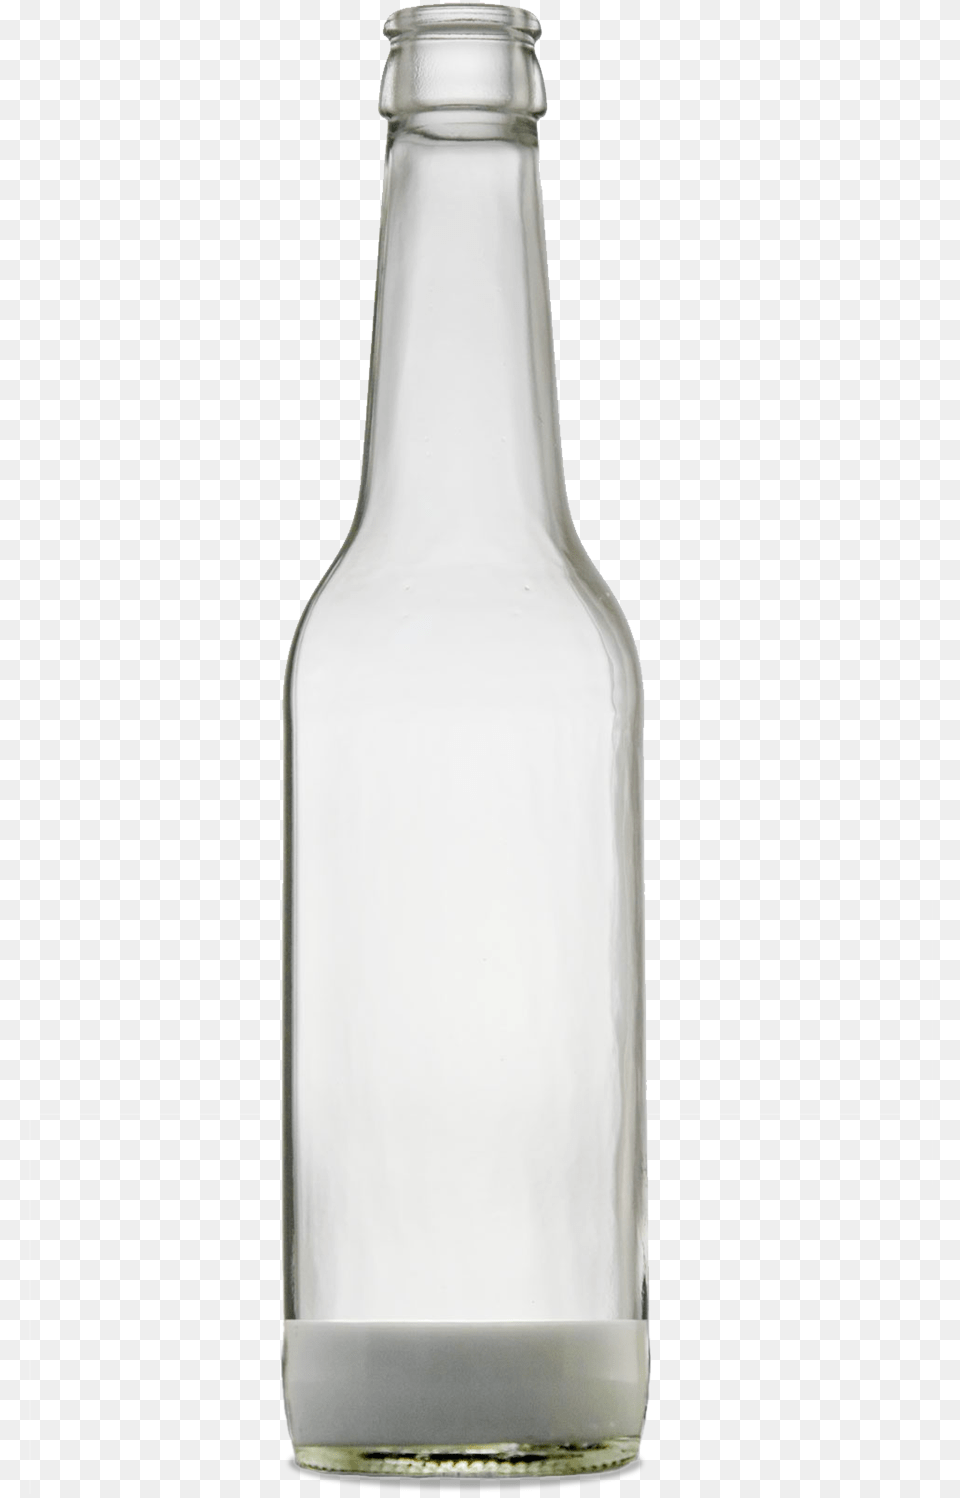 Glass Bottle, Alcohol, Beer, Beverage, Milk Free Transparent Png